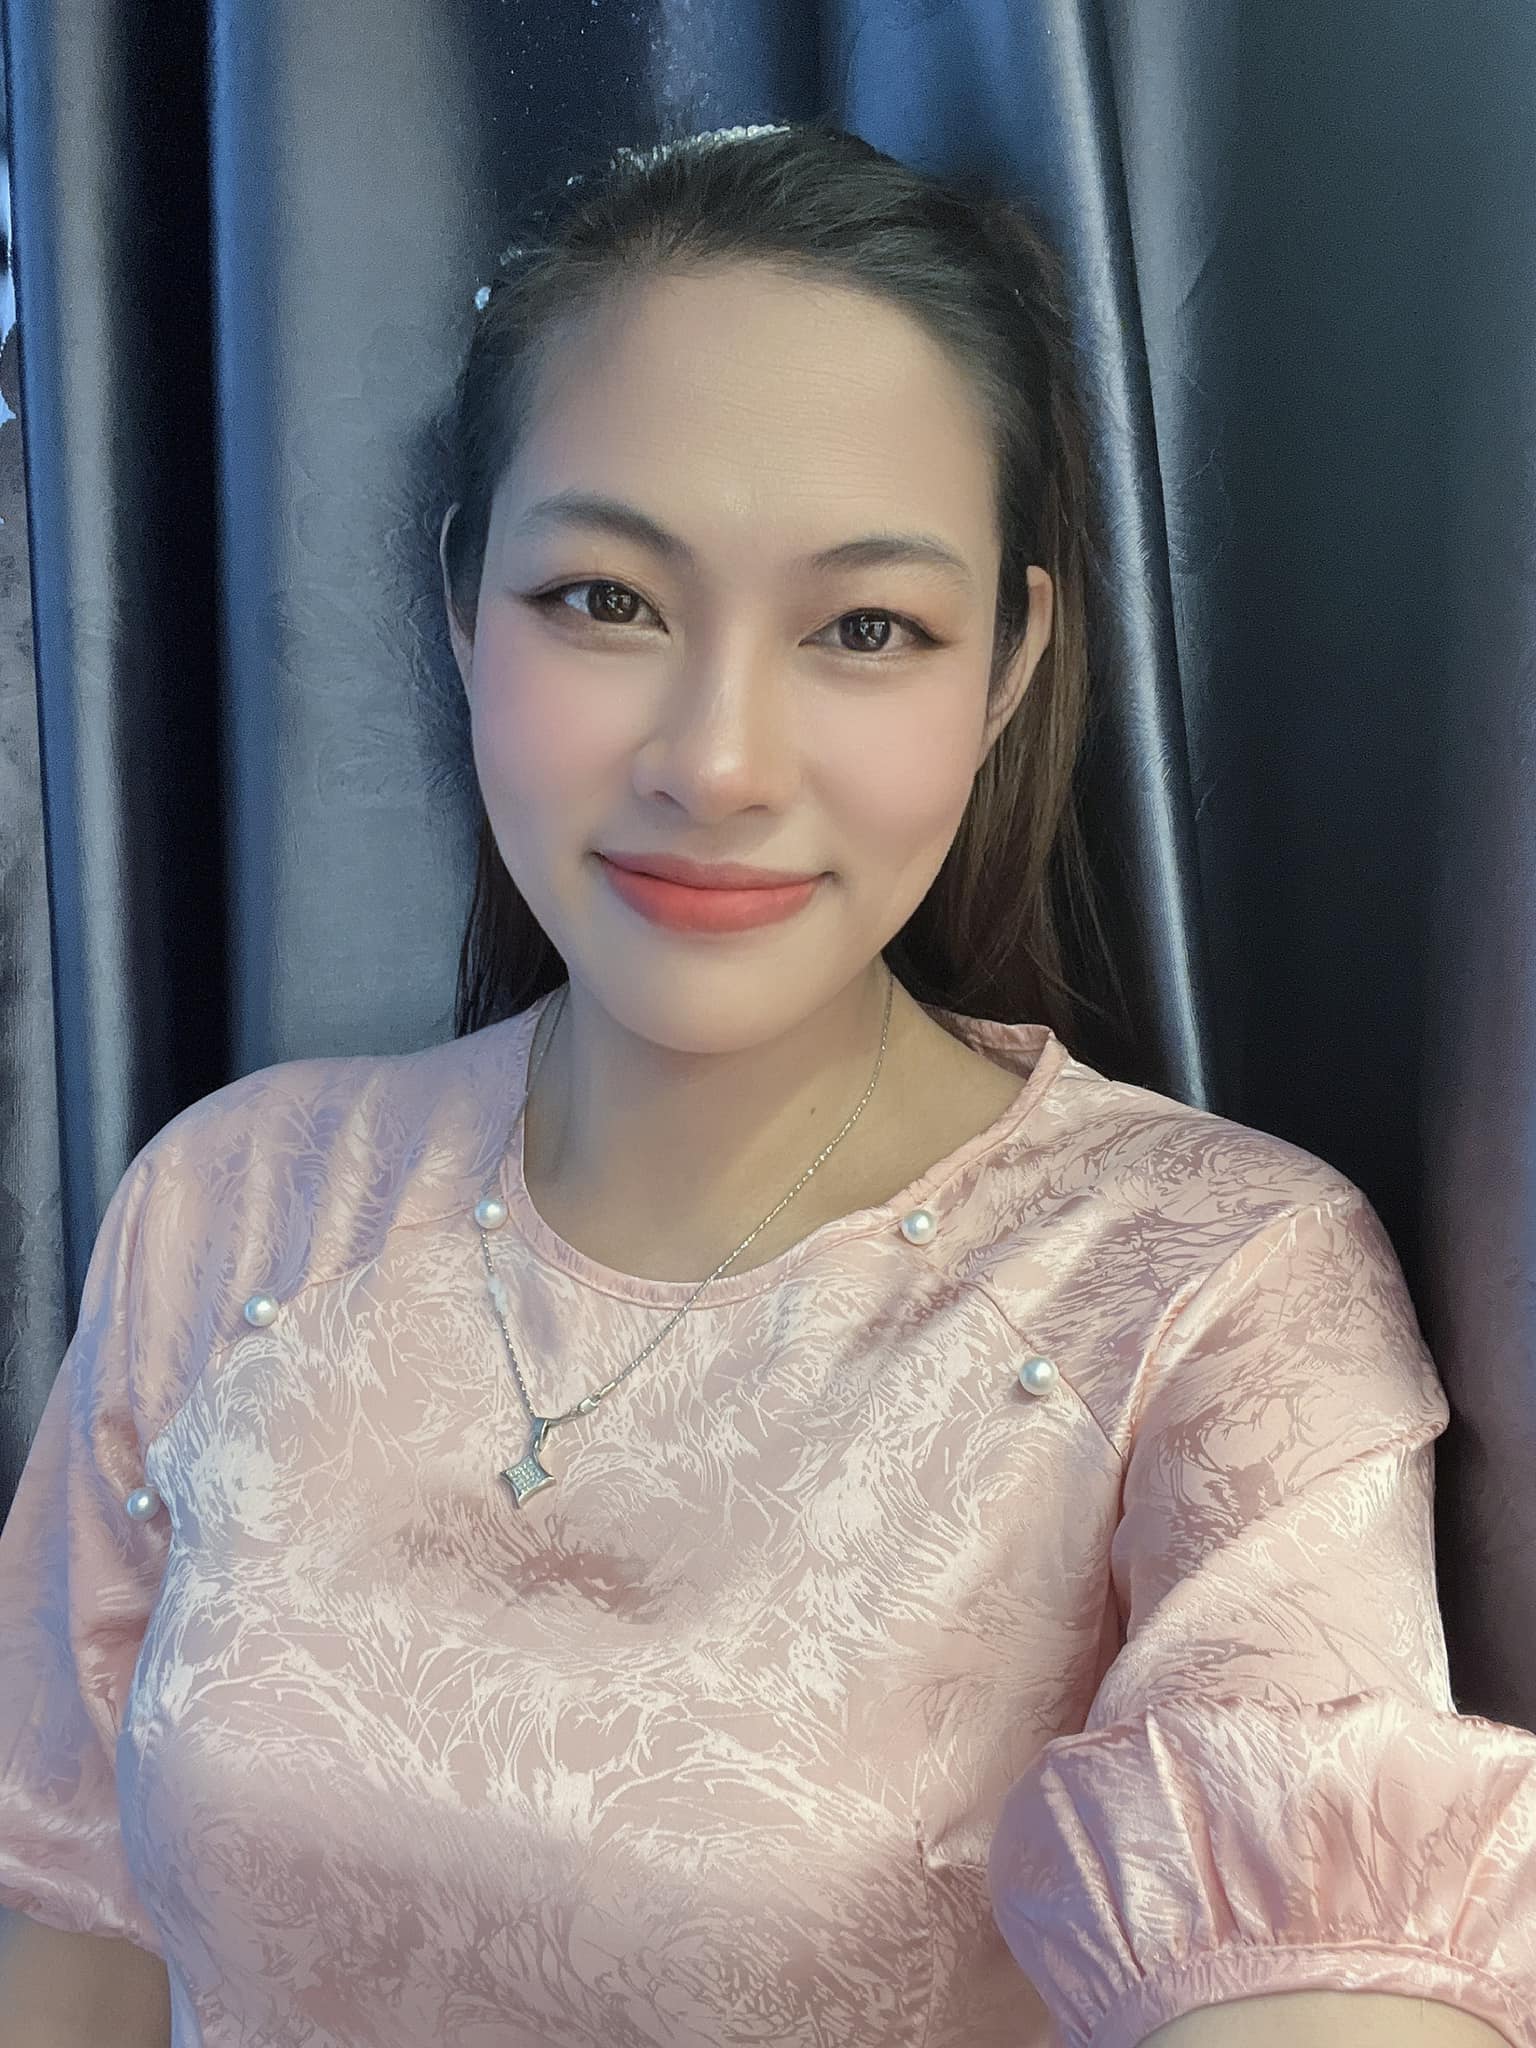 Chị gái Hoa hậu Đặng Thu Thảo tuyên bố tiếp tục kiện Nguyễn Thúc Thùy Tiên, đòi bằng được 1,5 tỷ đồng - ảnh 1